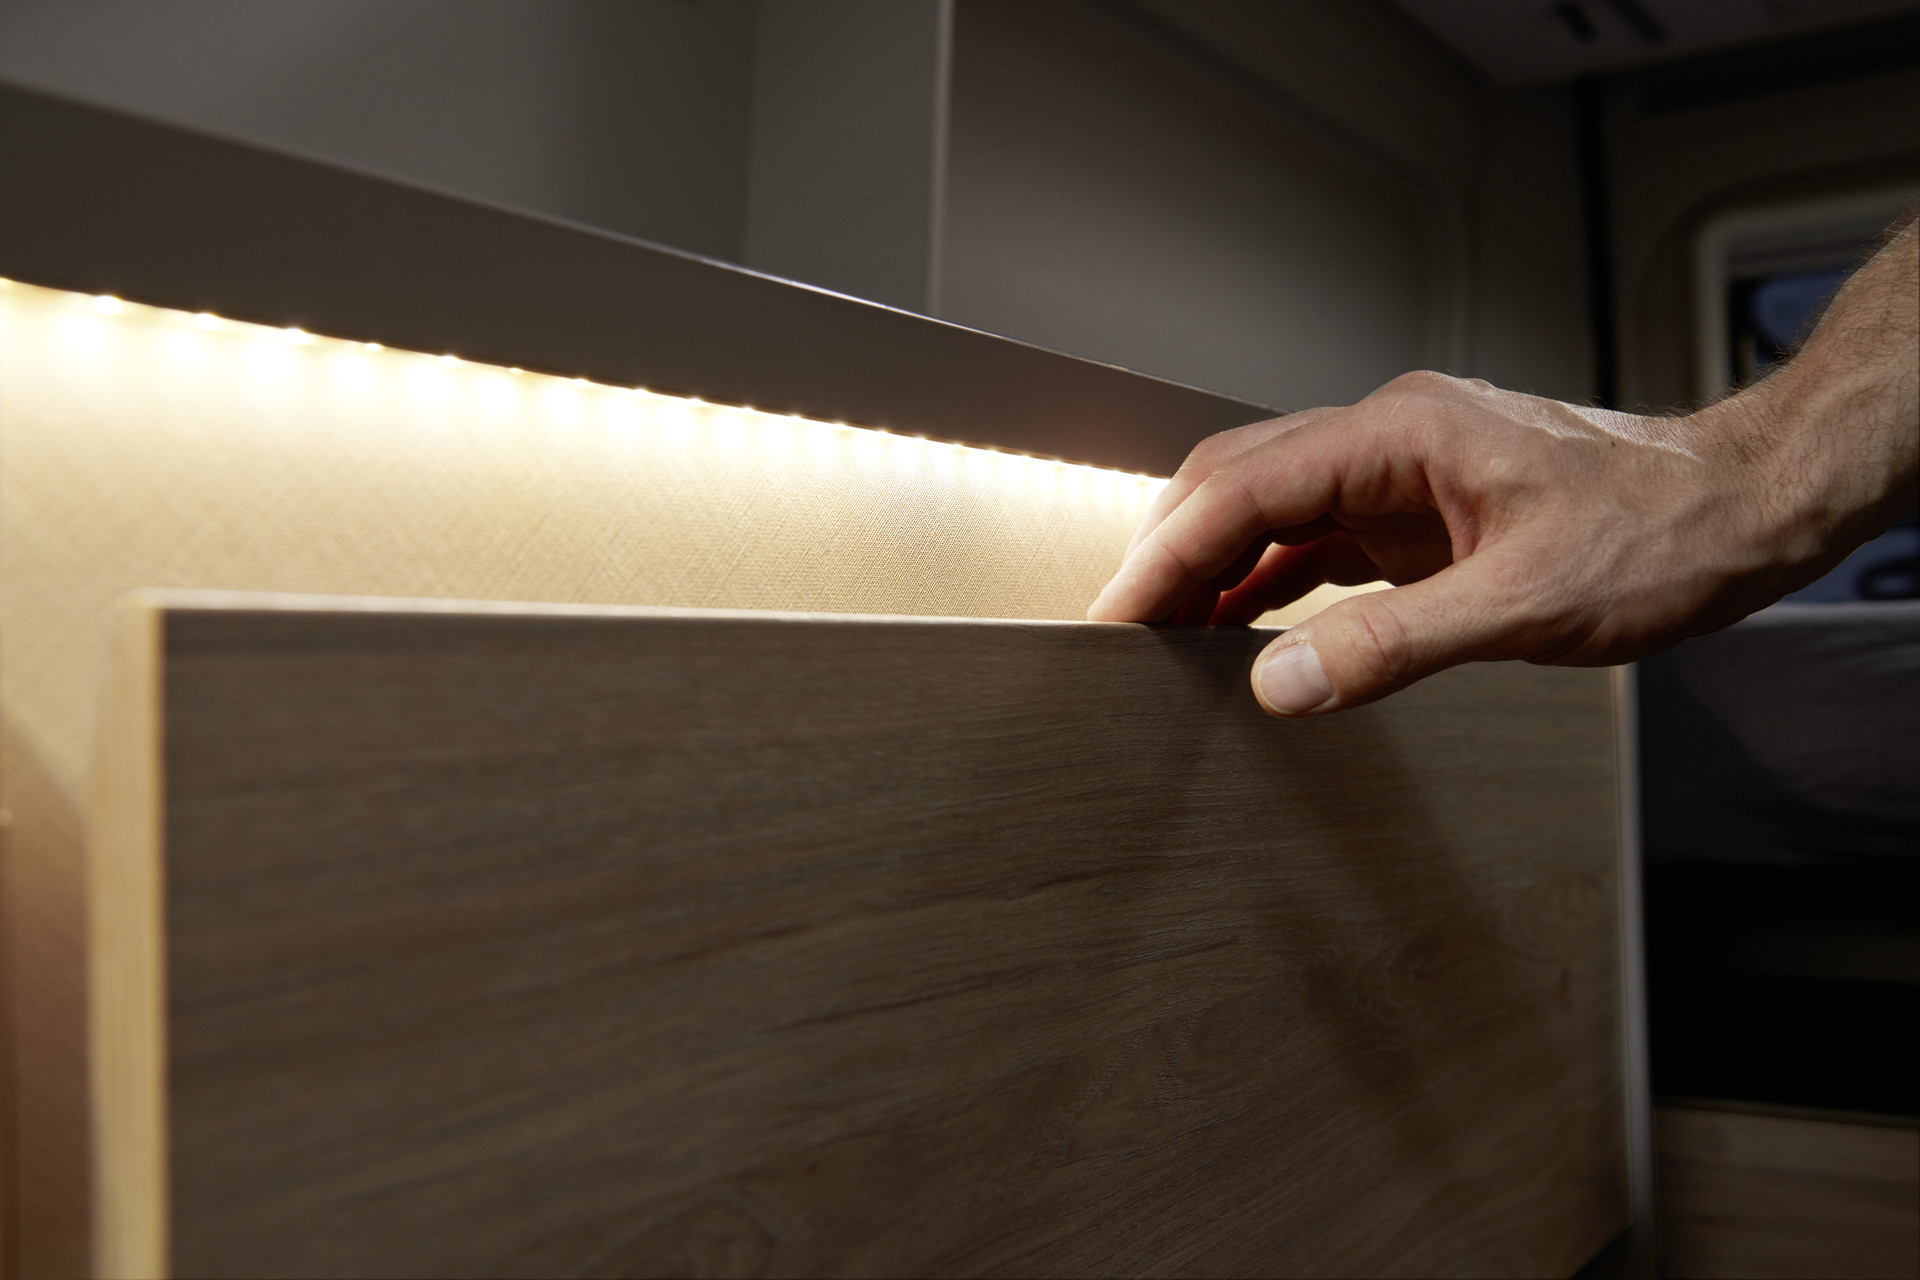 L’éclairage indirect permet de mieux voir l’intérieur du tiroir et créé une ambiance chaleureuse.